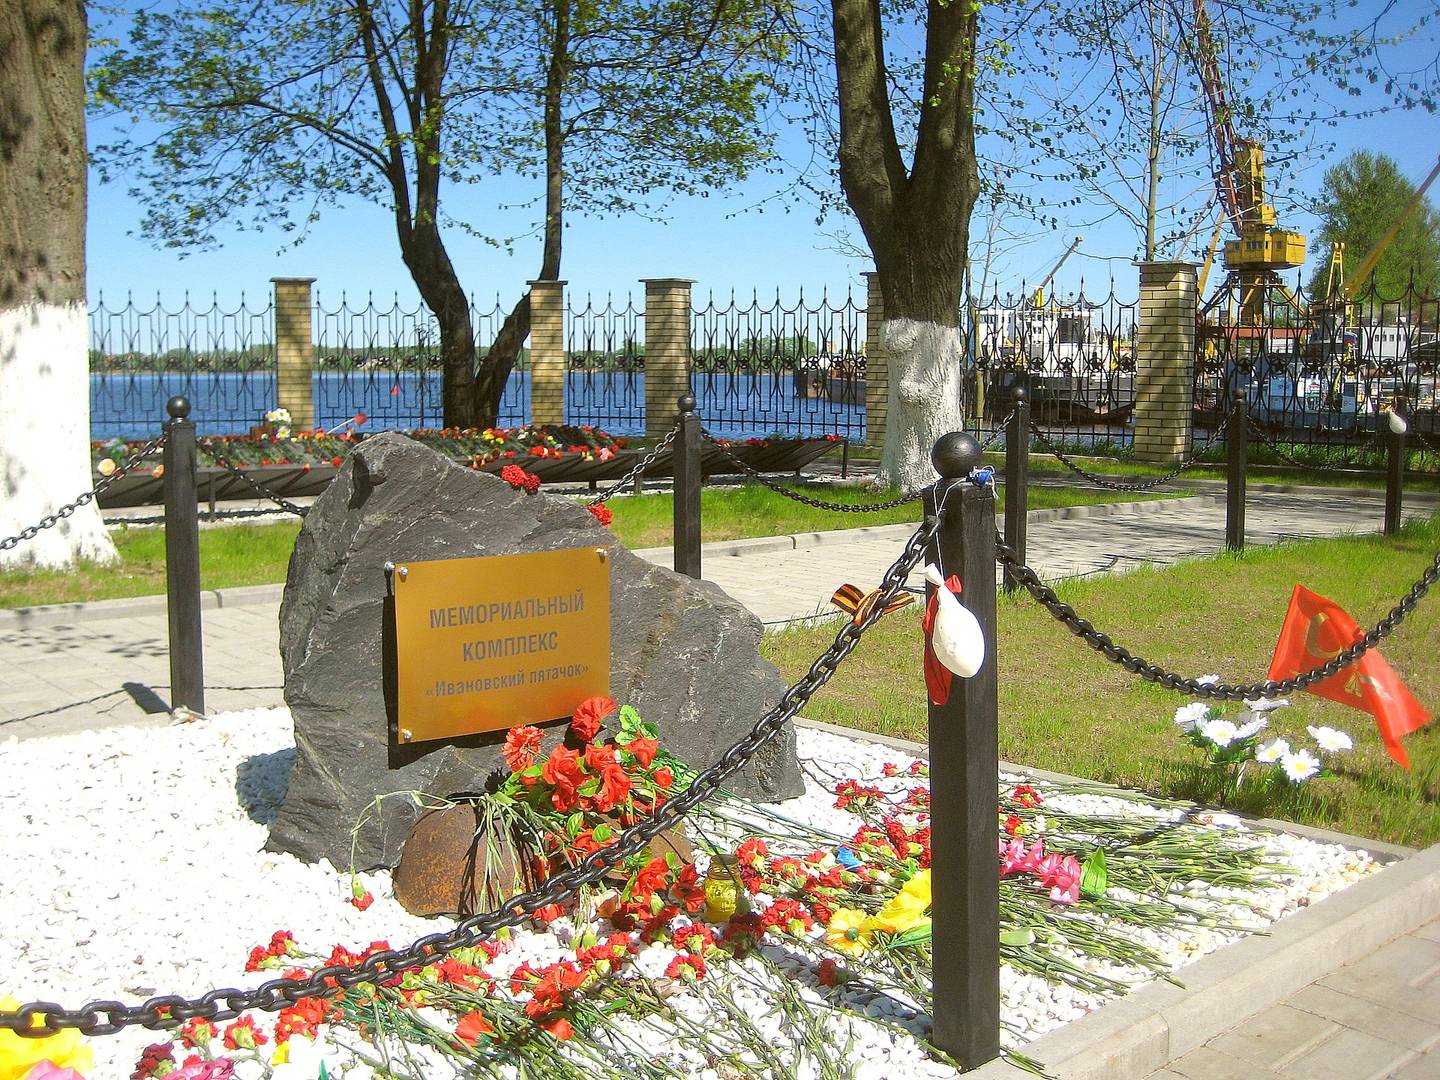 Мемориальный комплекс Ивановский пятачок. 2016 год